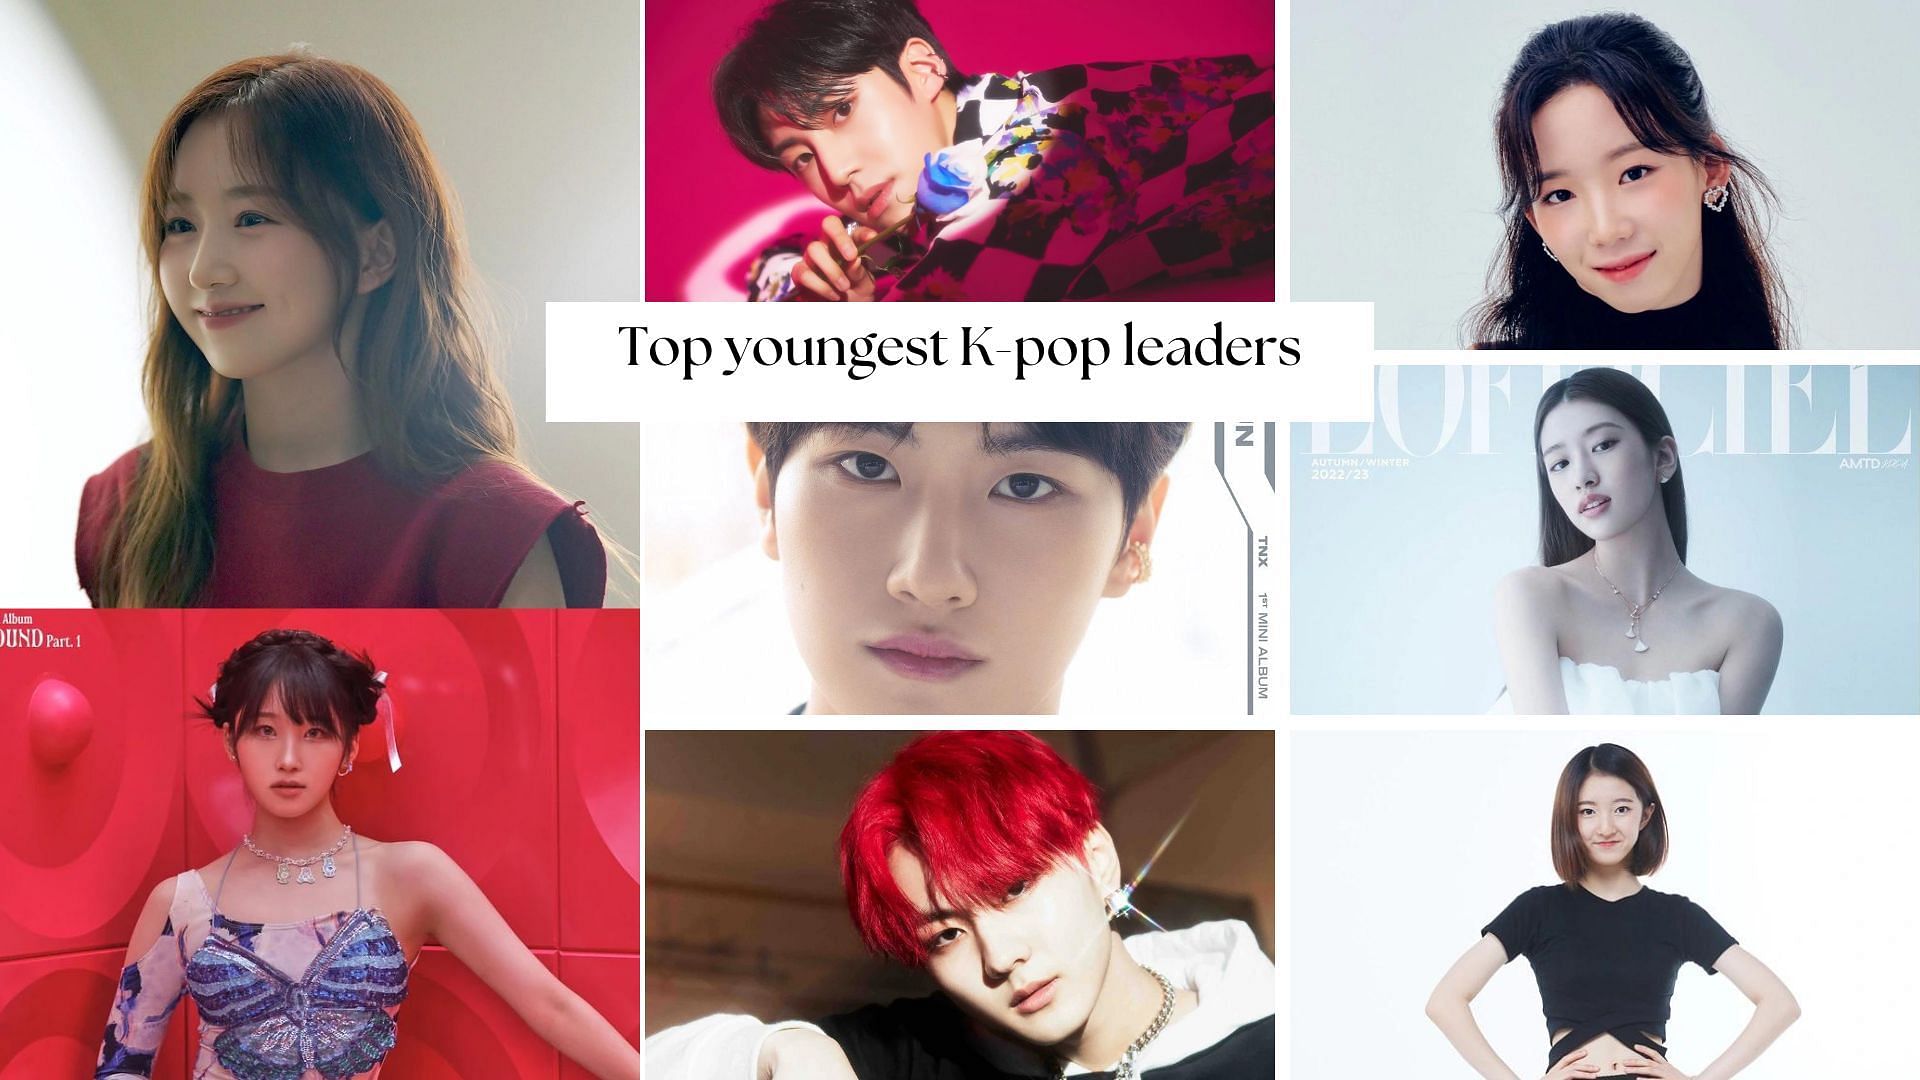 Youngest Kpop leaders ENHYPEN’s Jungwon, NMIXX’s Haewon